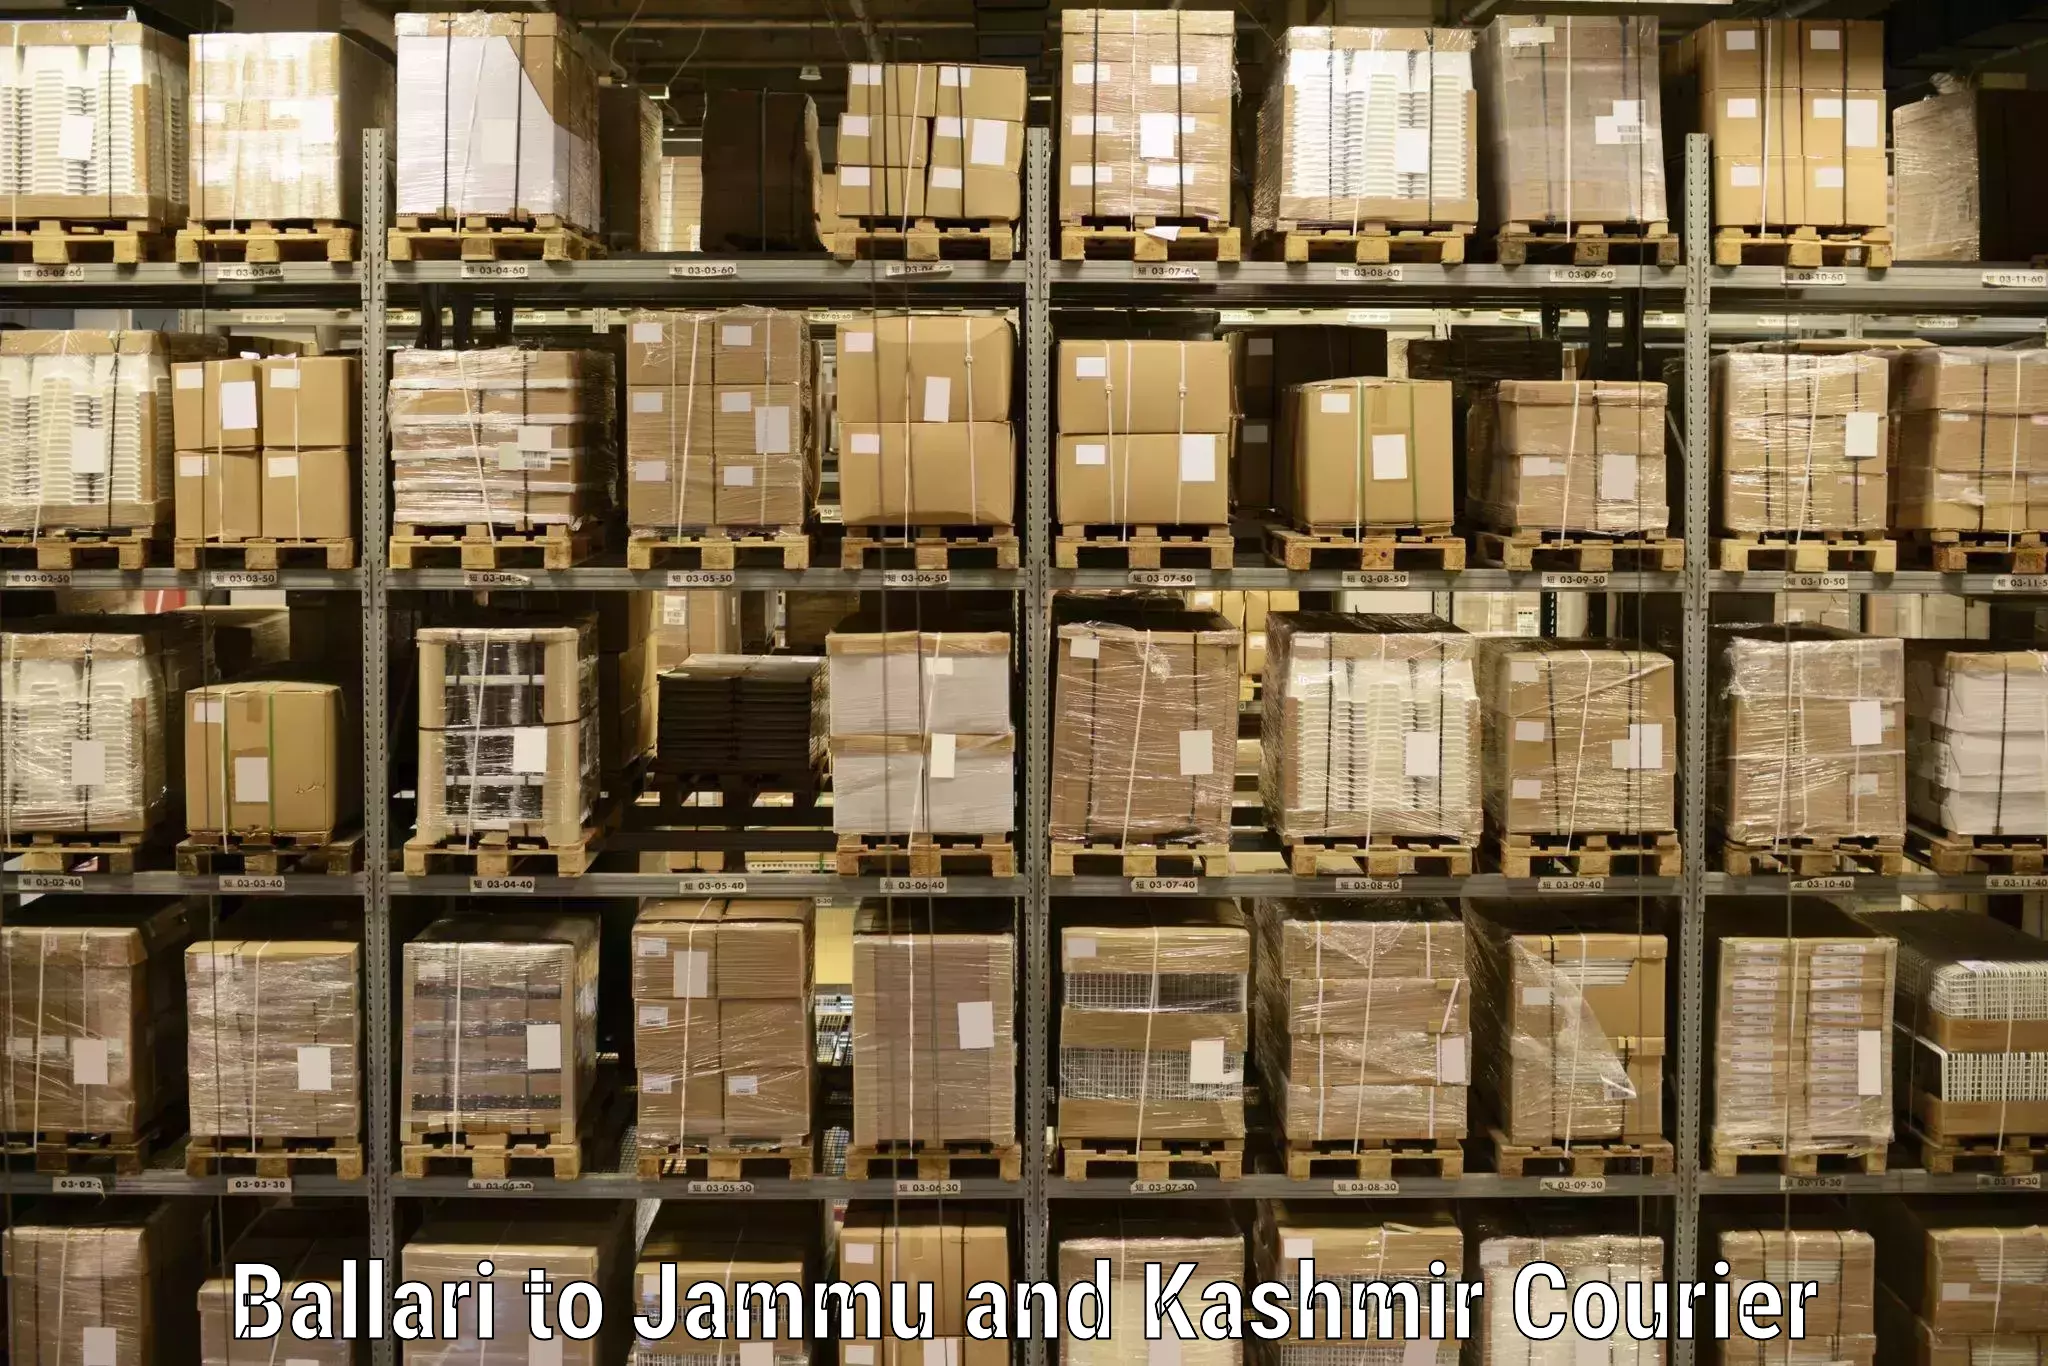 Global freight services Ballari to Jammu and Kashmir